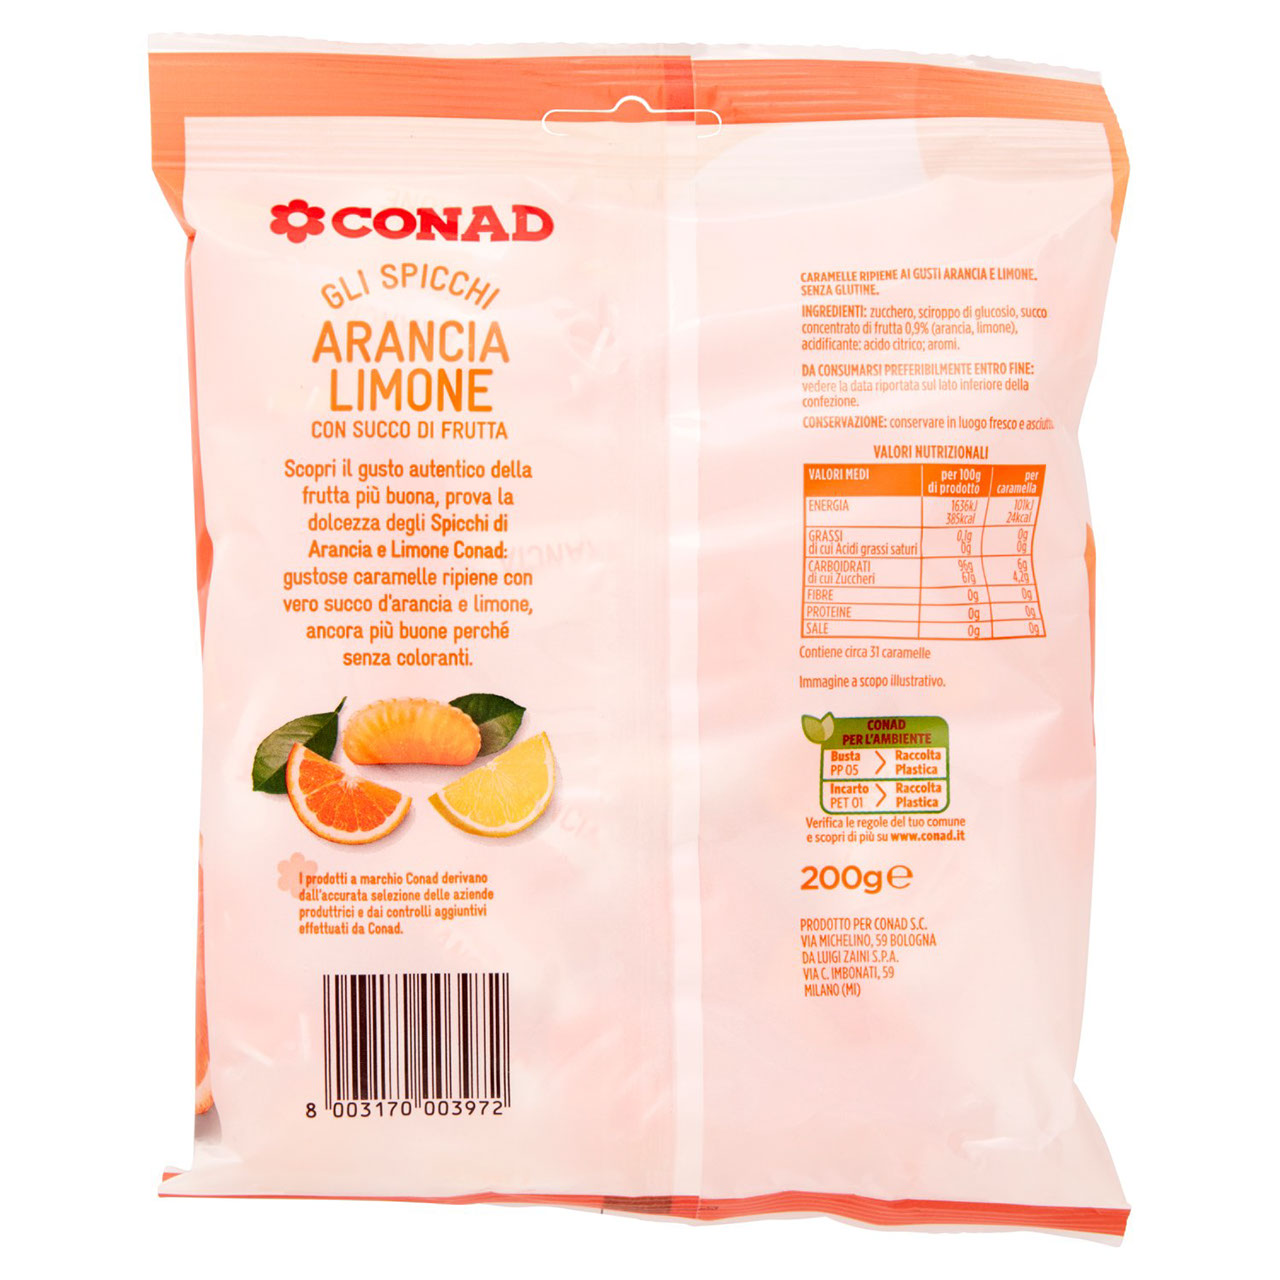 Gli Spicchi Arancia Limone 200 g Conad